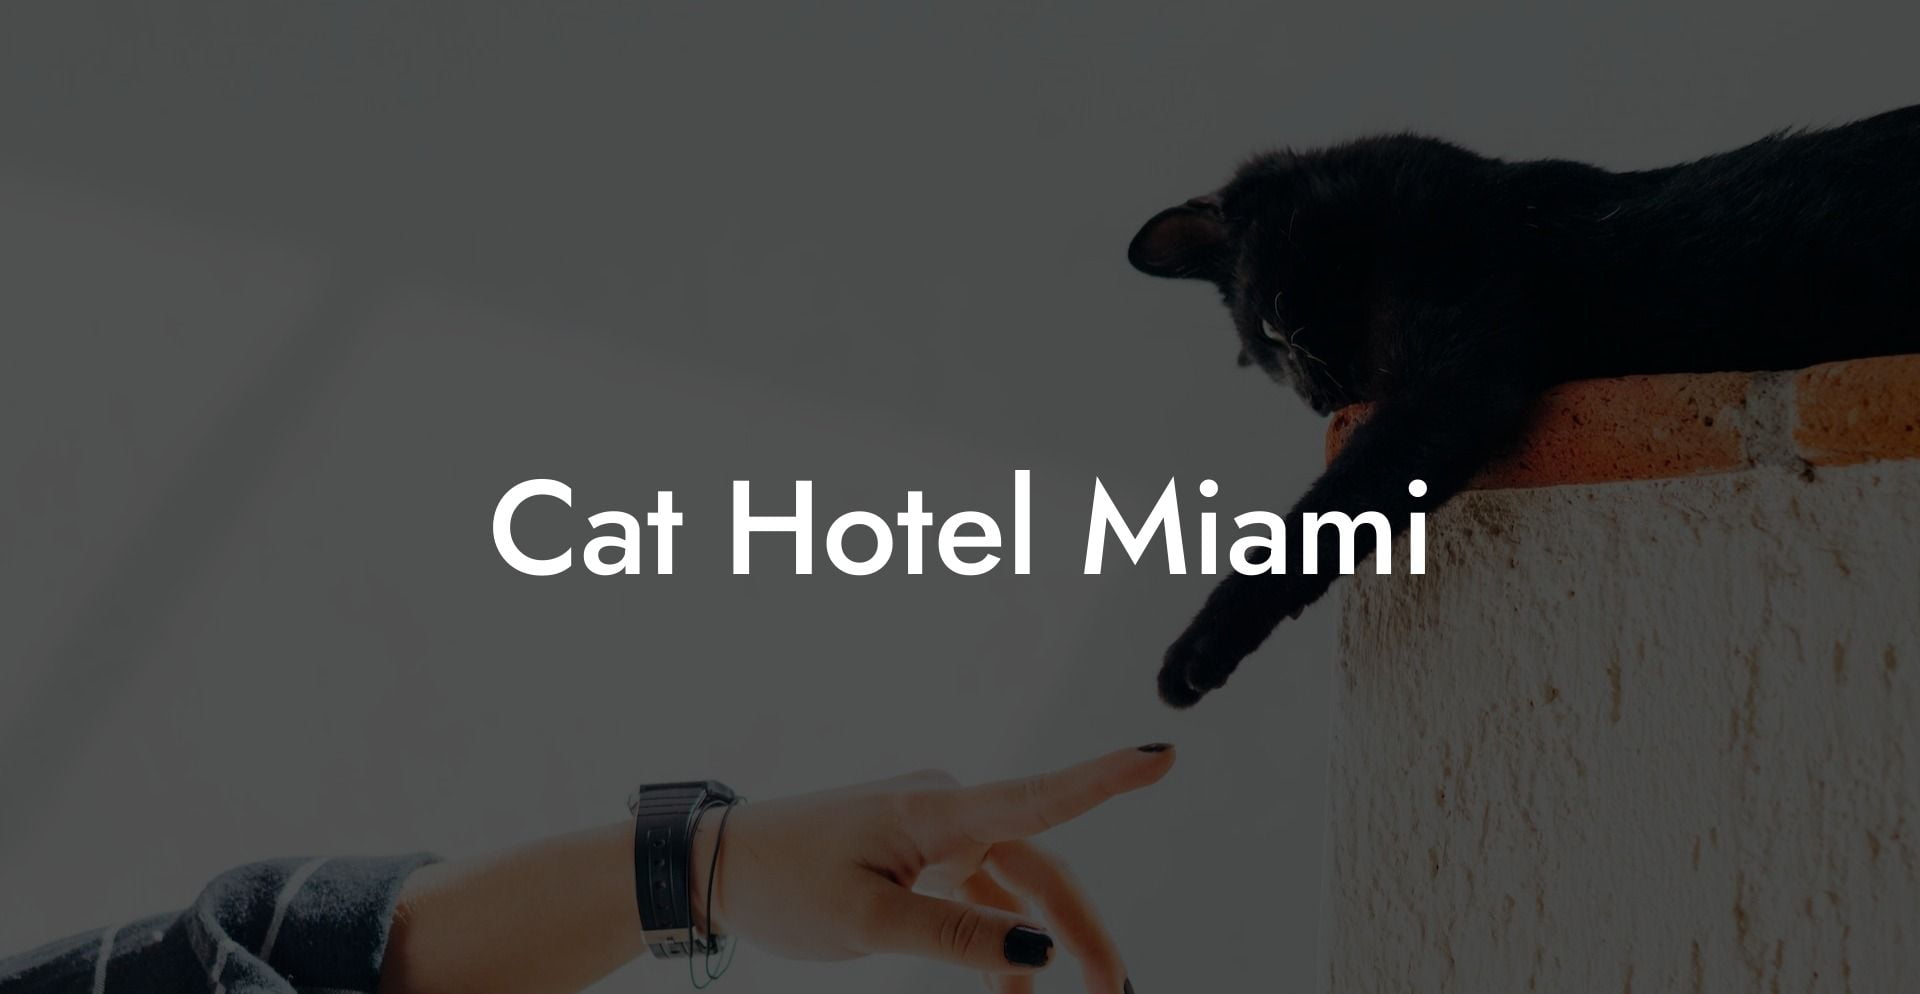 Cat Hotel Miami